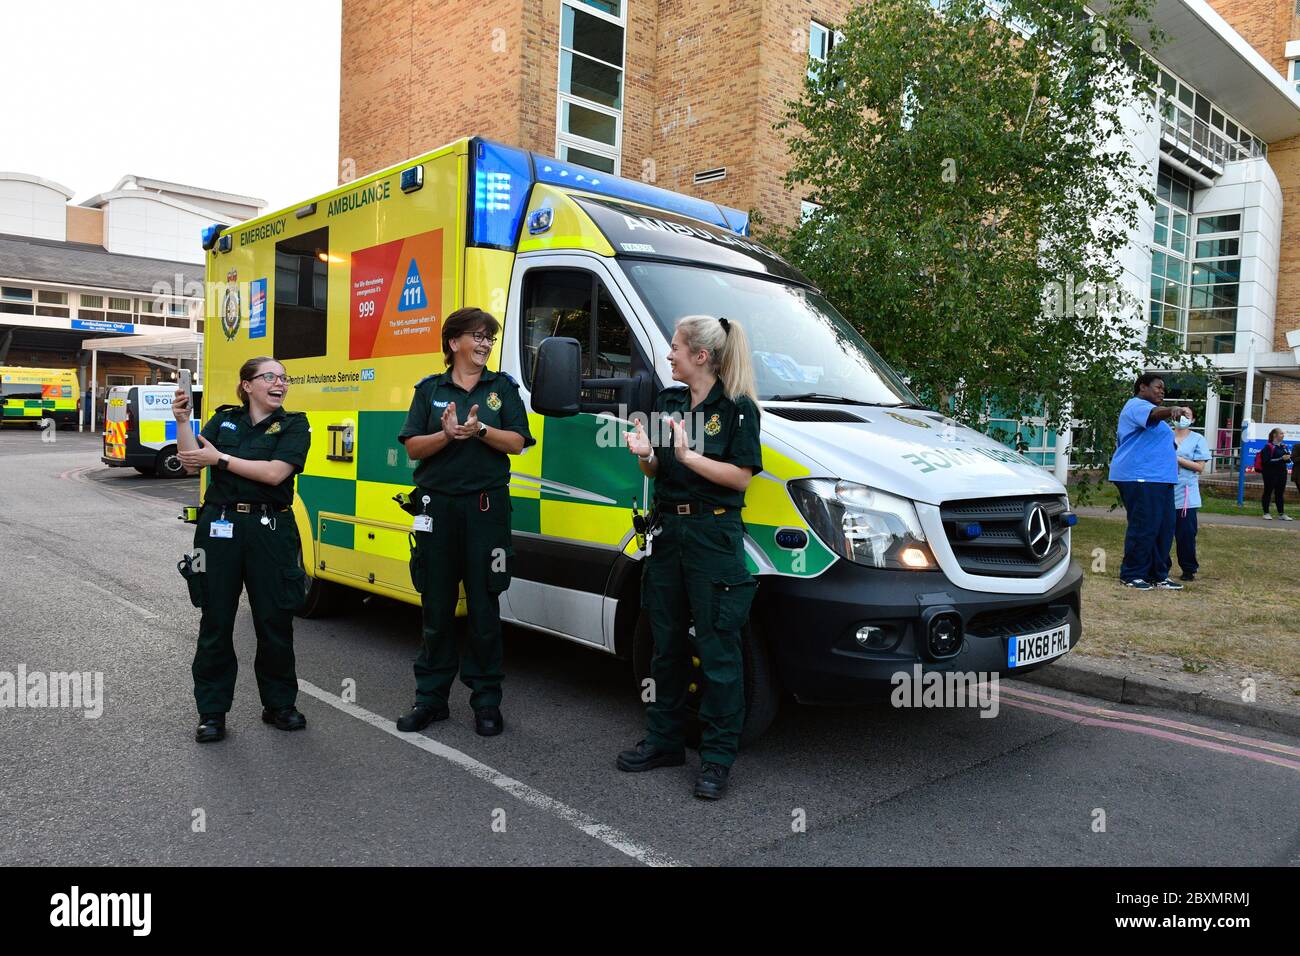 Ambulanza lavoratori appiccicarsi sostegno a Giovedi 20:00 appiccicamento per gli accompagnatori durante Coronavirus lockdown, Royal Berkshire Hospital UK maggio 2020 Foto Stock